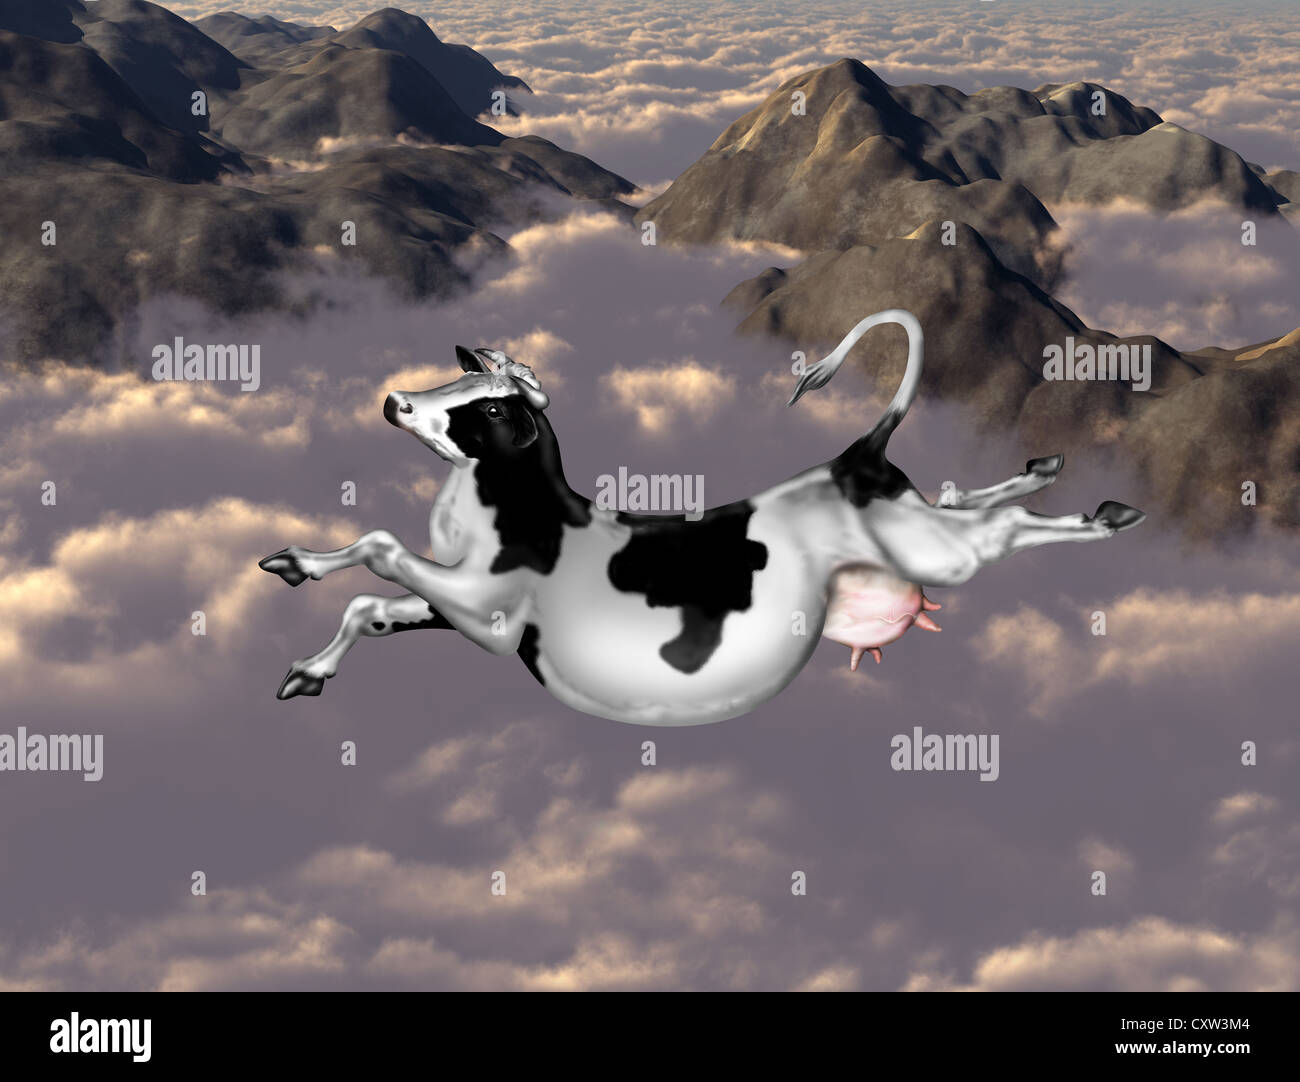 Abbildung einer Kuh fliegen über den Wolken und Berge Stockfoto